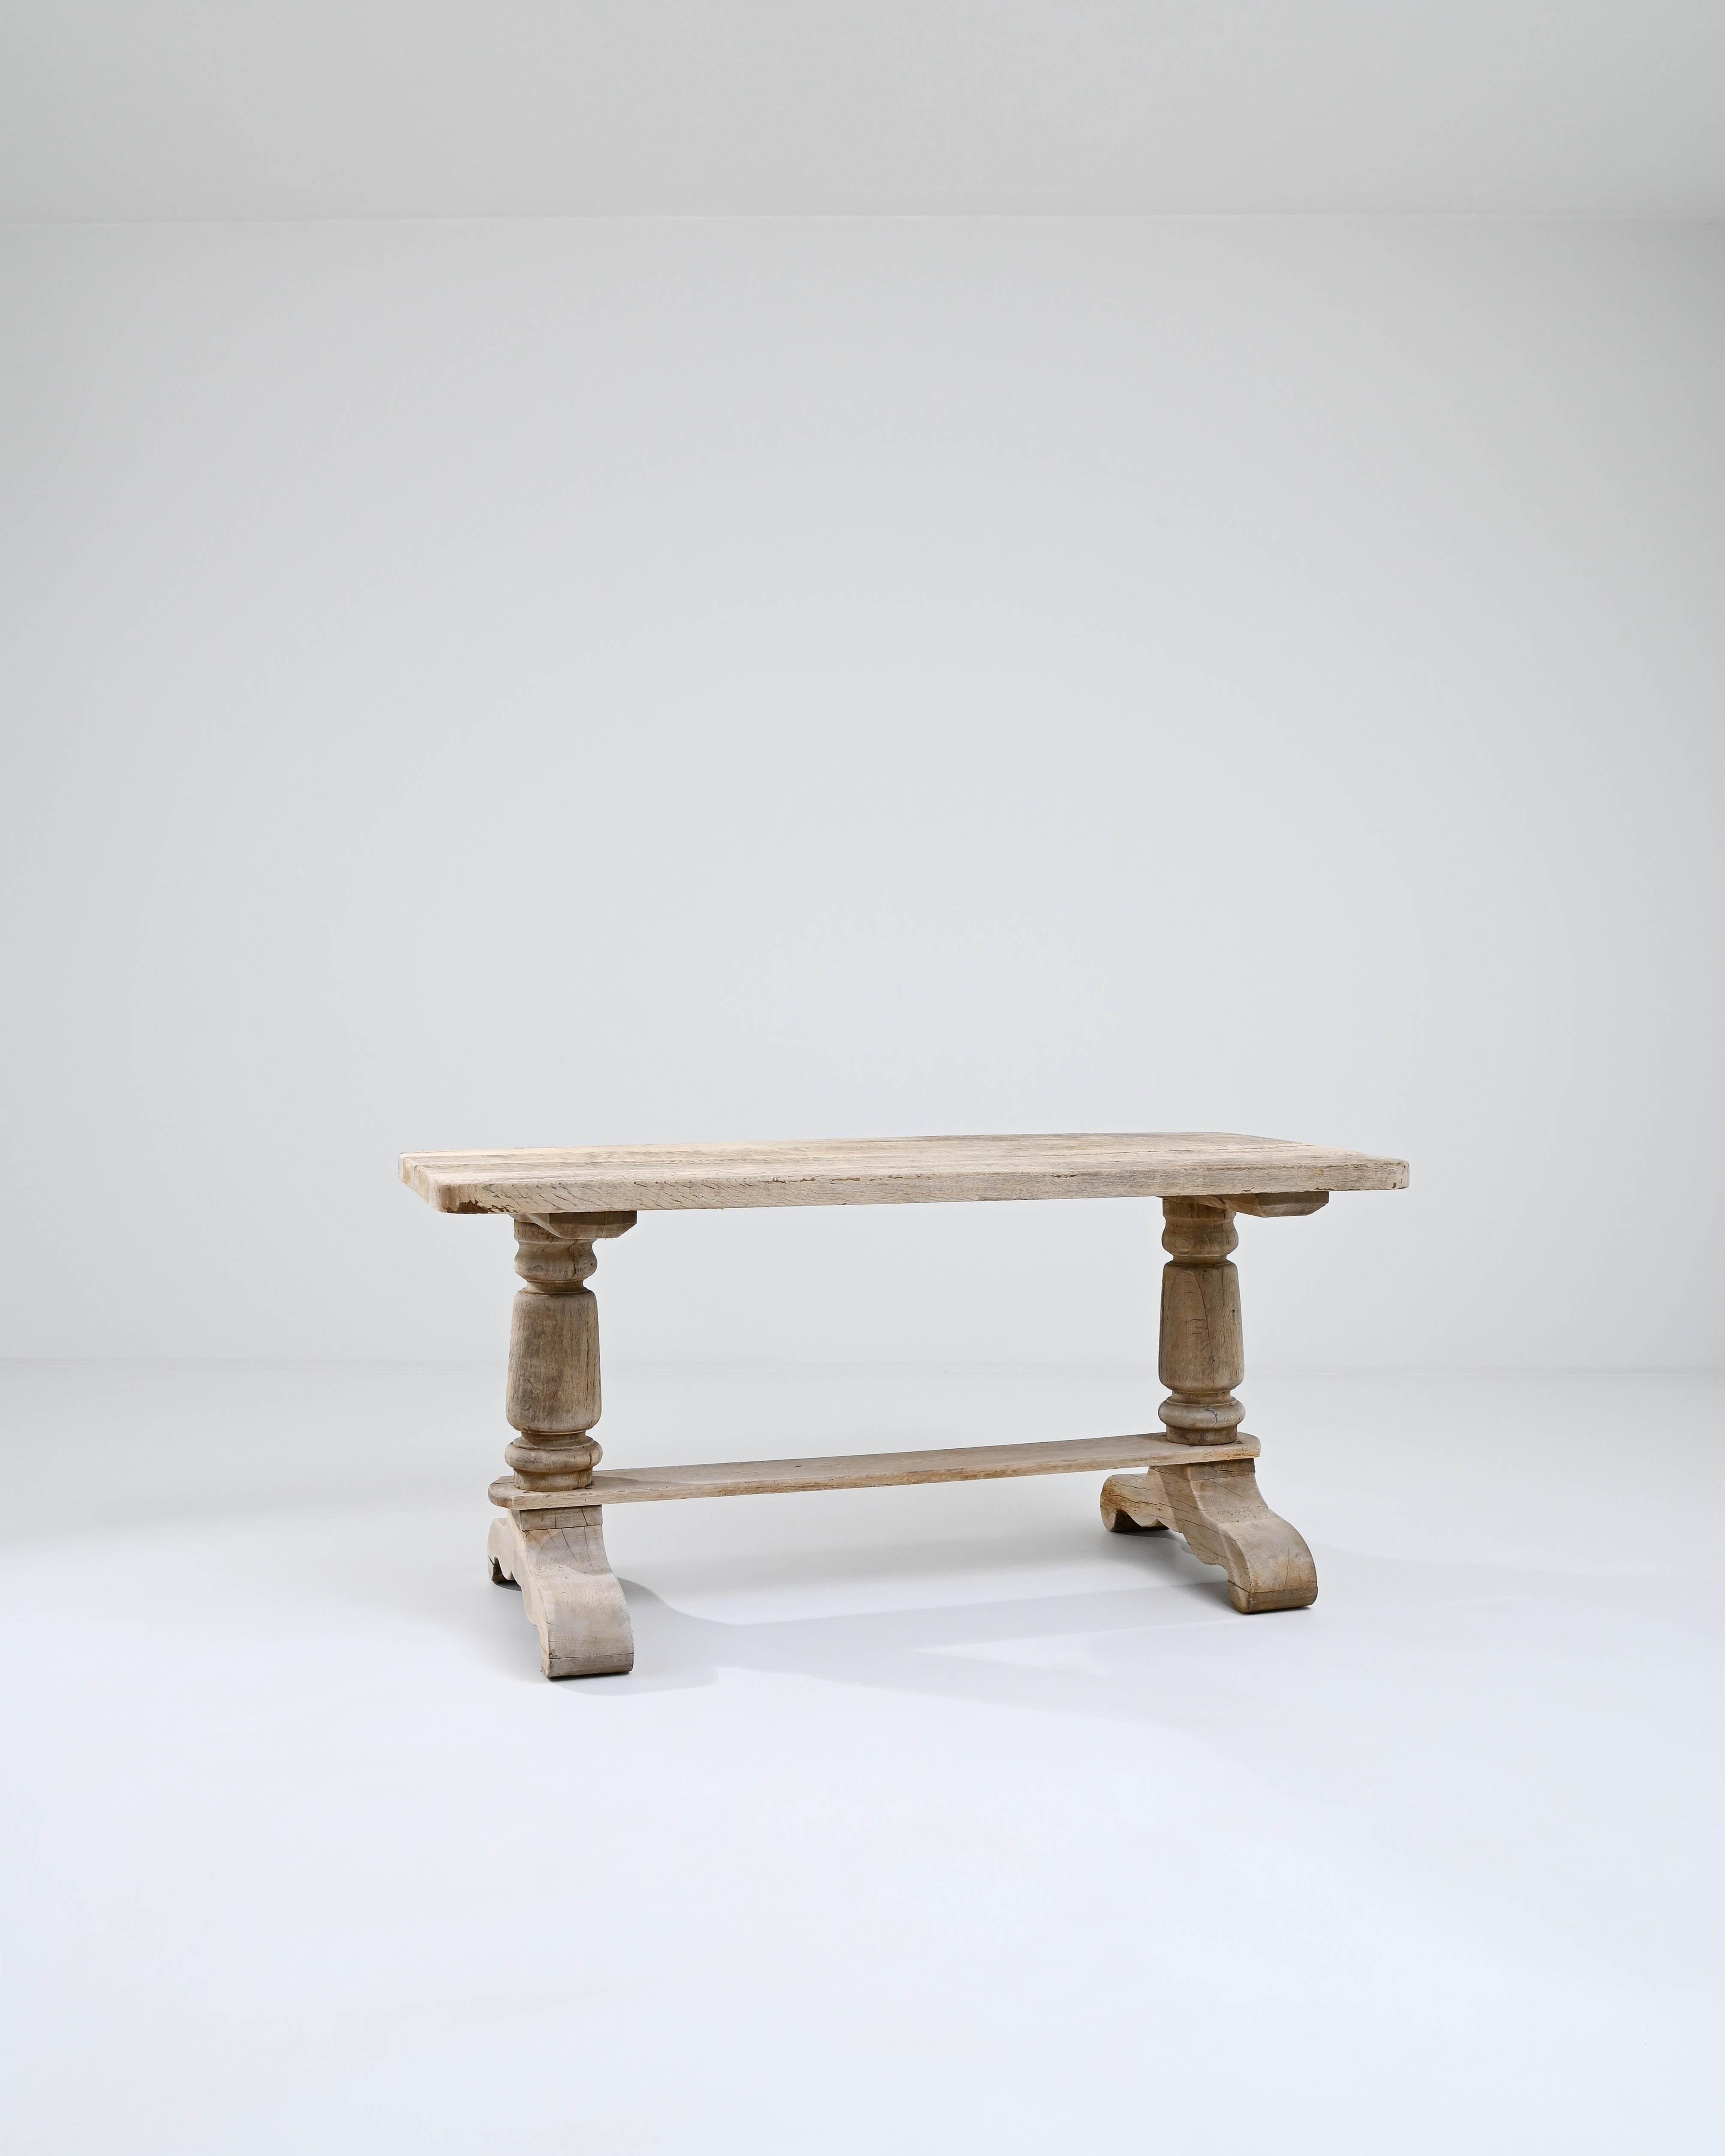 Dieser Esstisch aus Eichenholz ist robust und anmutig zugleich und ein echter Blickfang. Die im 20. Jahrhundert in Belgien hergestellte Form spiegelt die traditionellen provinziellen Stile der flämischen Landschaft wider. Eine schlichte rechteckige